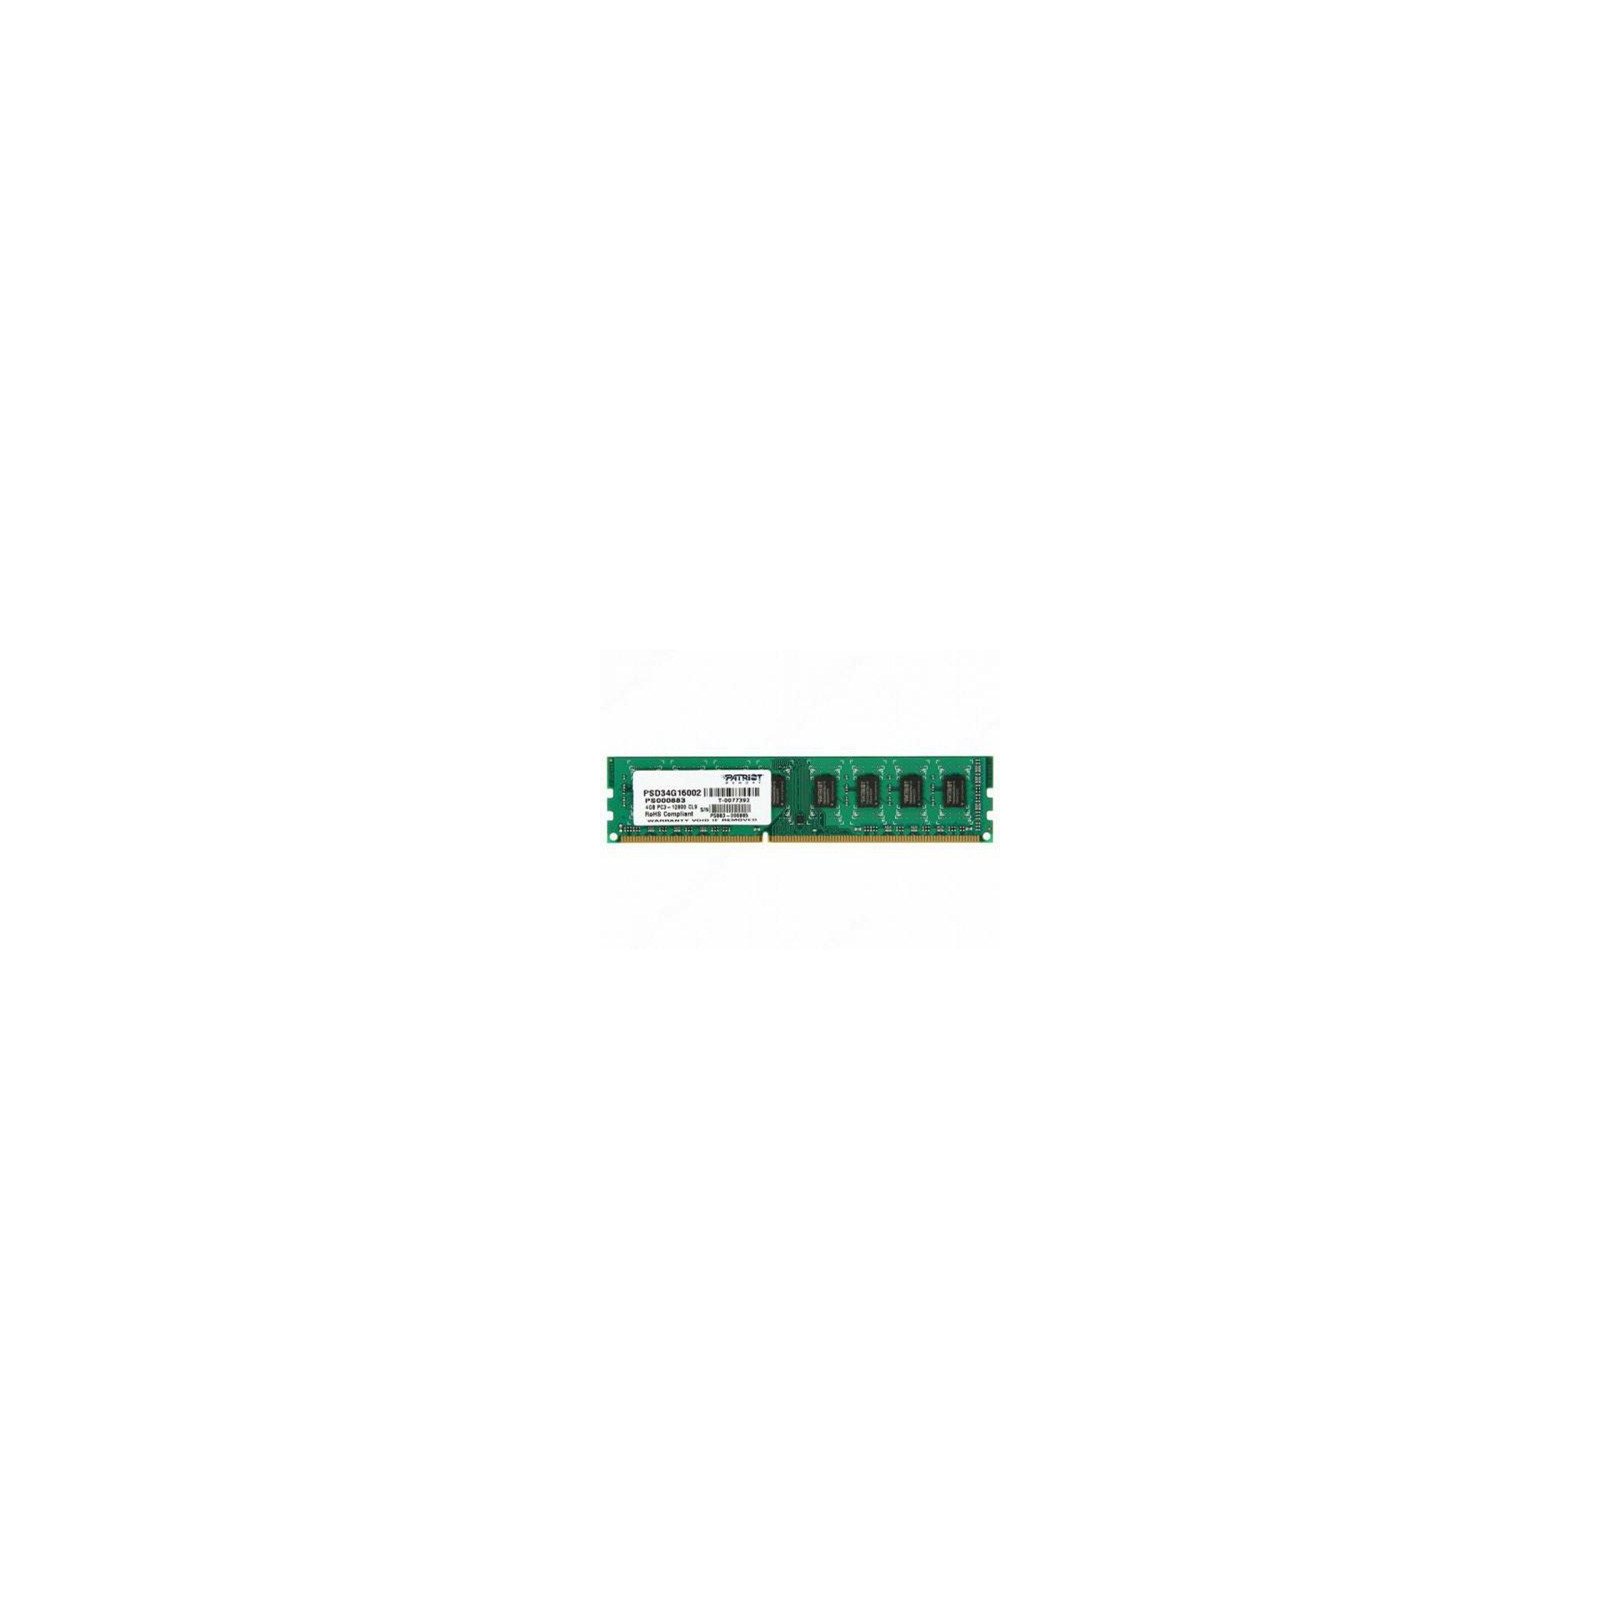 Модуль пам'яті для комп'ютера DDR3 4GB 1600 MHz Patriot (PSD34G16002)